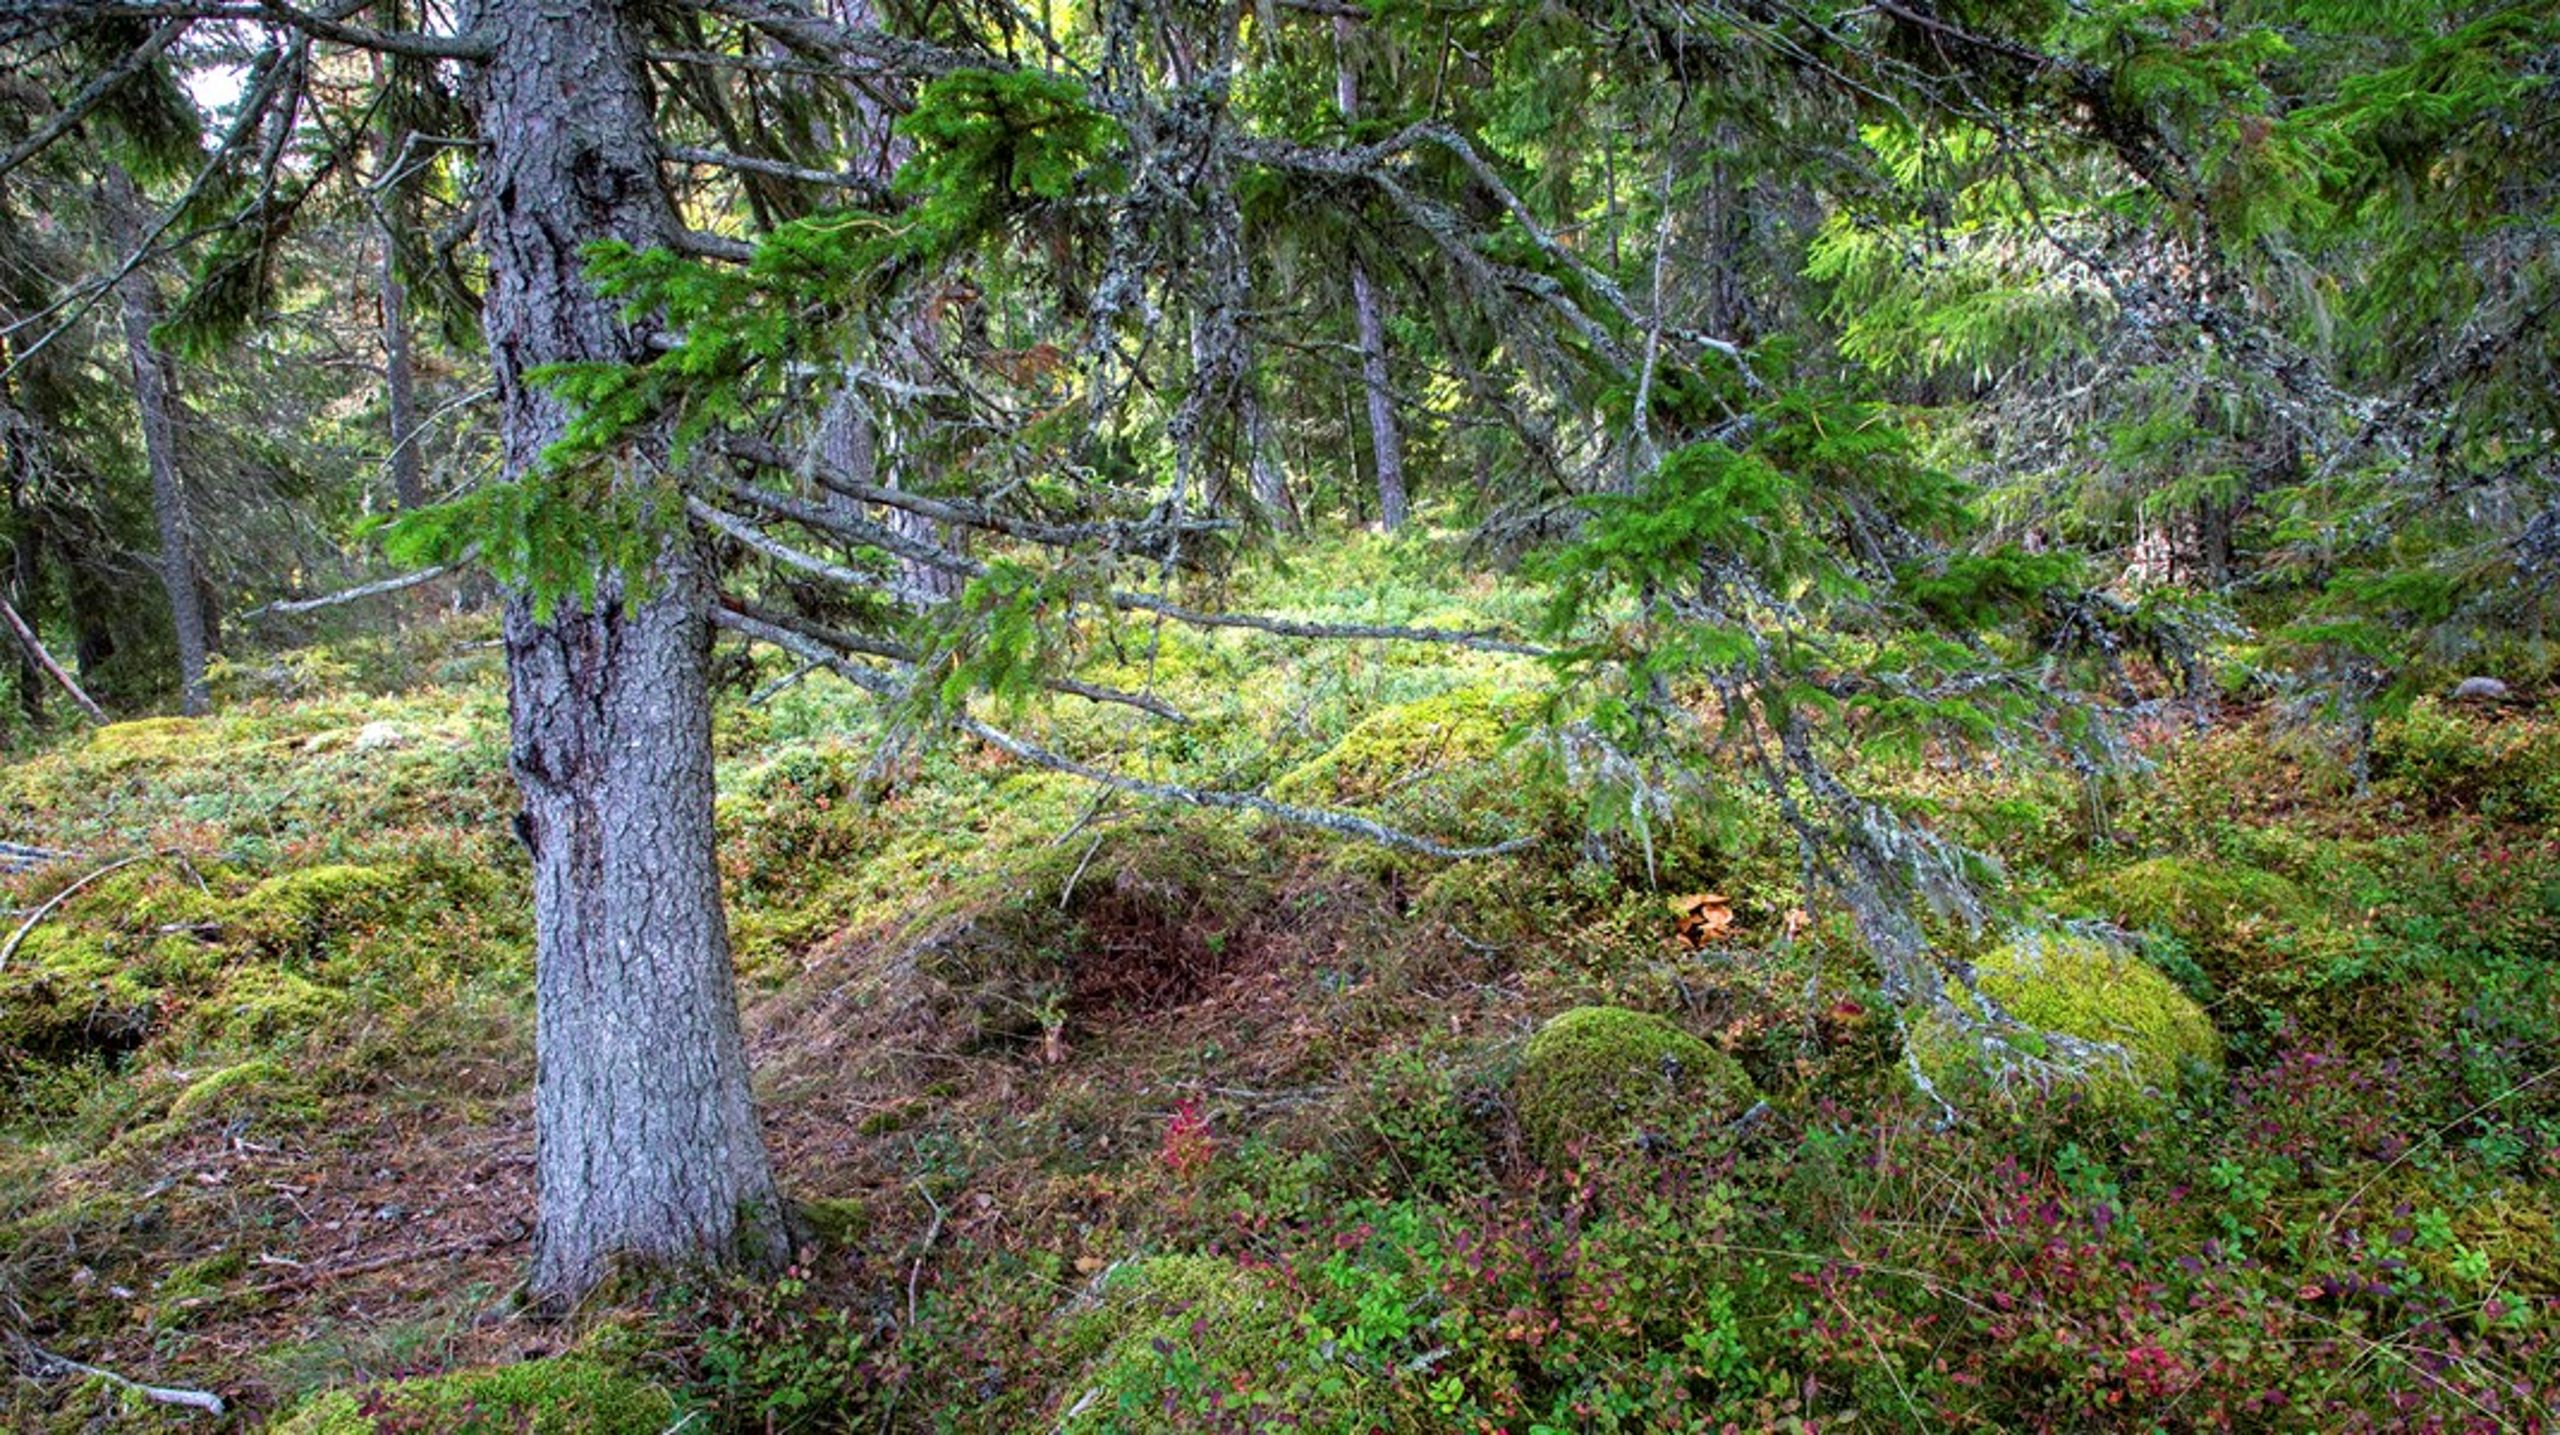 Svenska myndigheter bör
agera så att makten över svenskt skogsbruk stannar i Sverige, anser debattören.